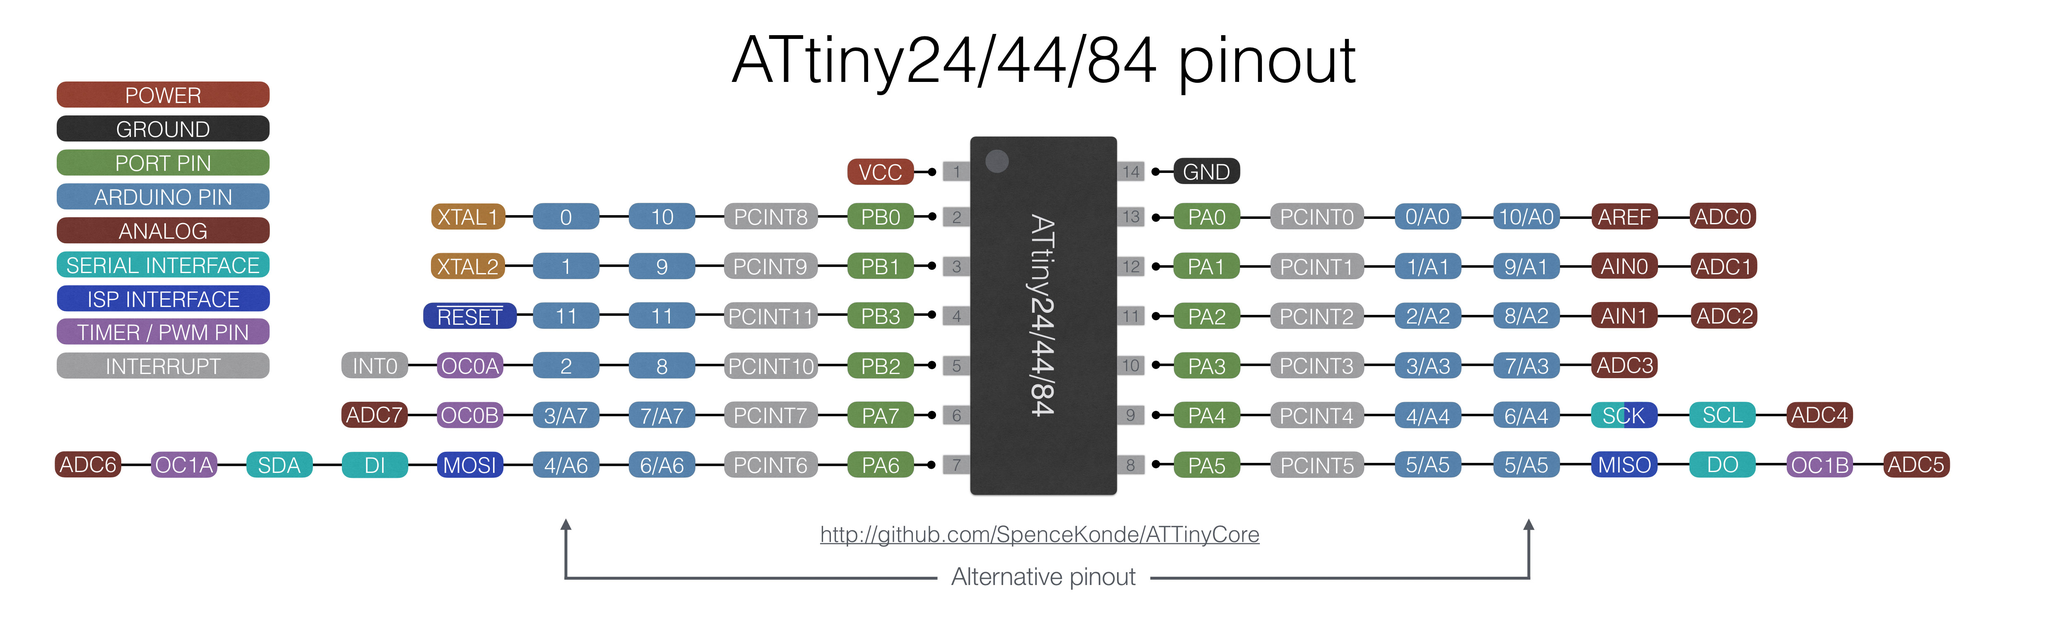 ATtiny44 pinout